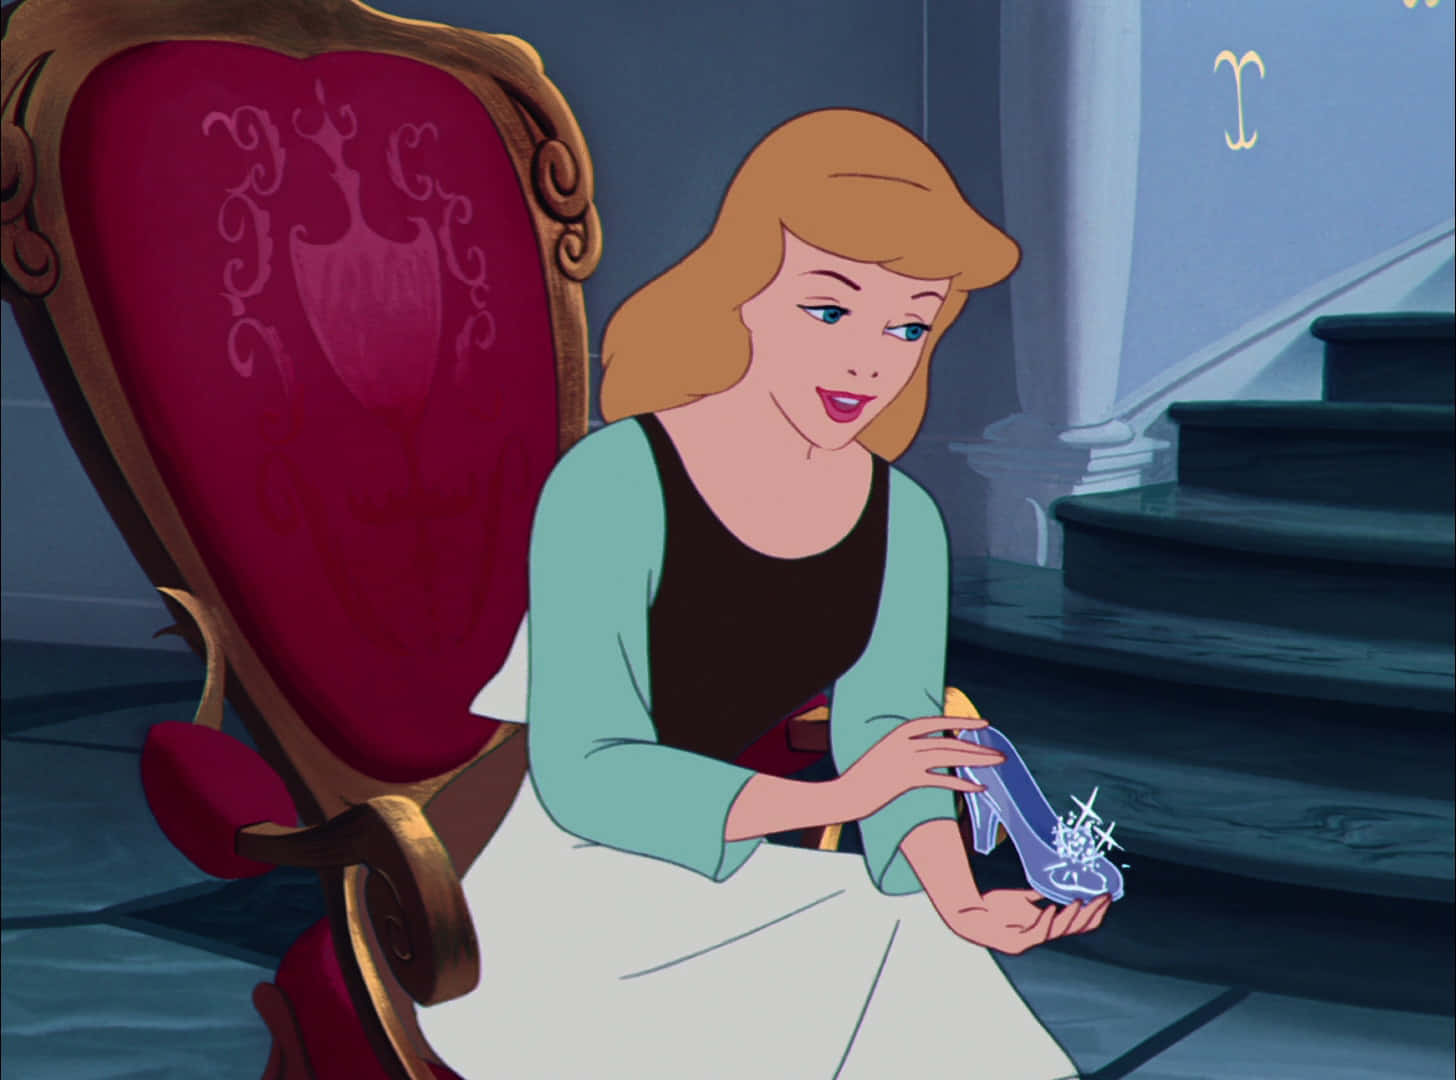 Disney character Cinderella has her dreams come true!